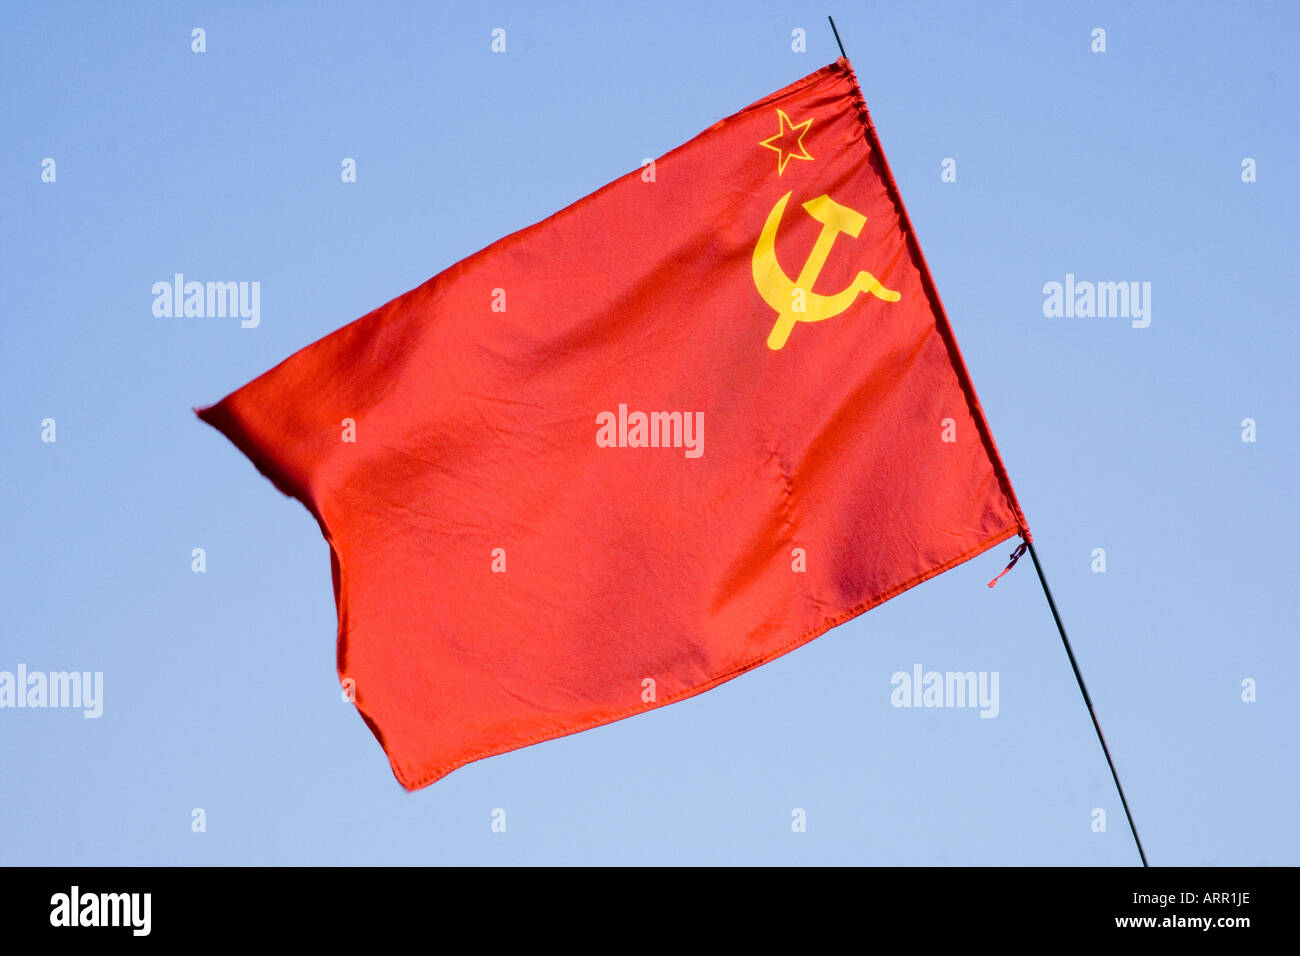 Russische kommunistische Flagge, rote Flagge mit Hammer und Sichel und  Umriss eines Sterns in Gelb, der gegen den blauen Himmel flattert  Stockfotografie - Alamy